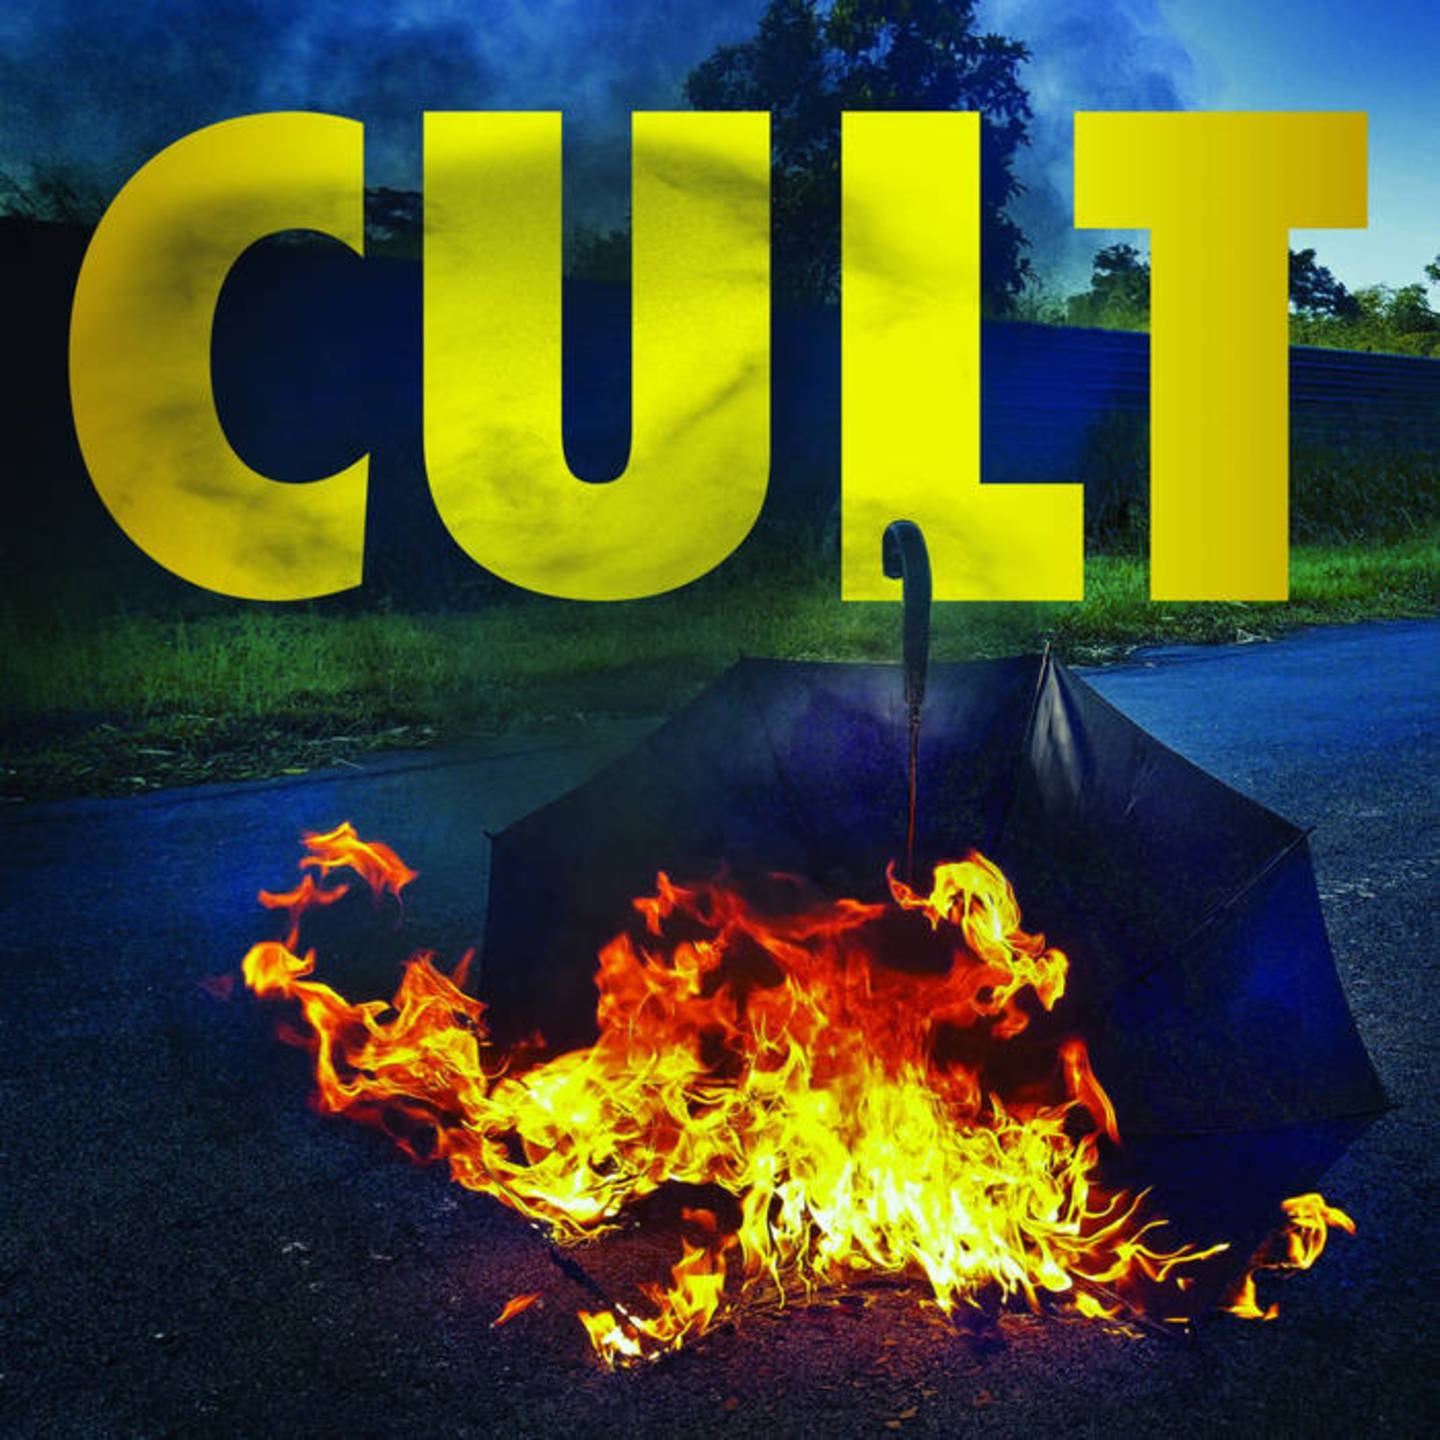 CAULFIELD CULT, THE - Cult LP Colour Vinyl